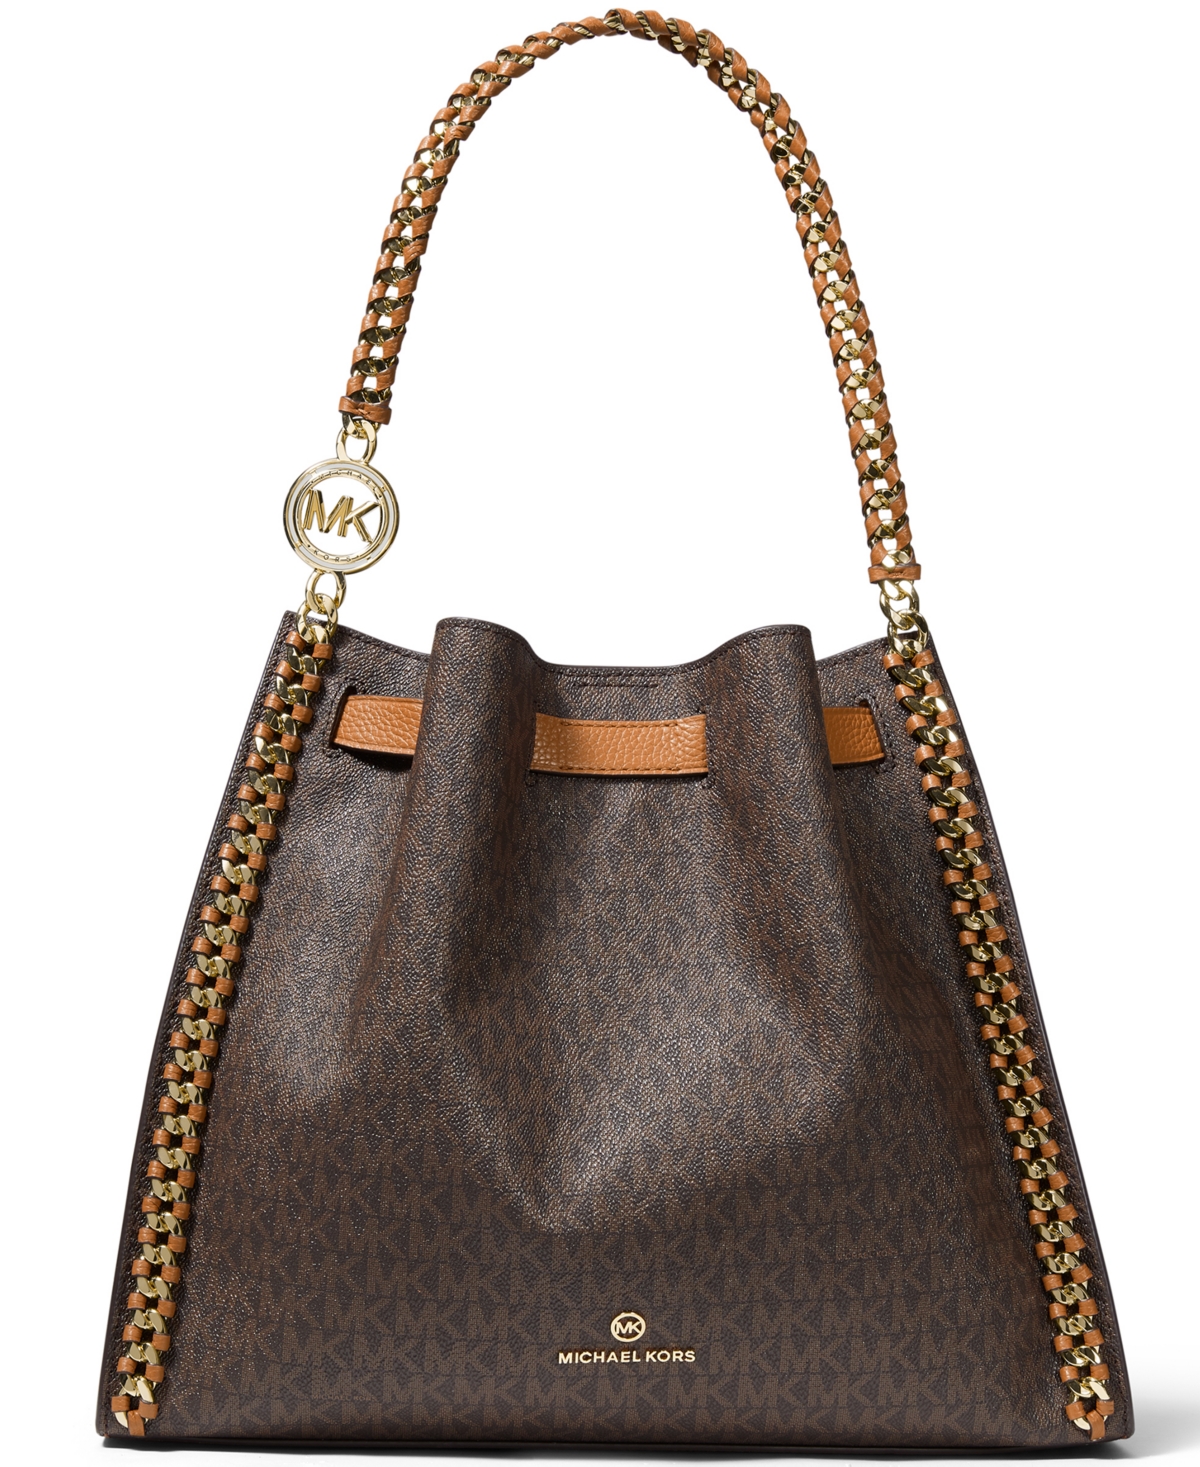 Michael Kors Women Lady Large Leather Shoulder Tote Bag Handbag Purse Black  Gold 